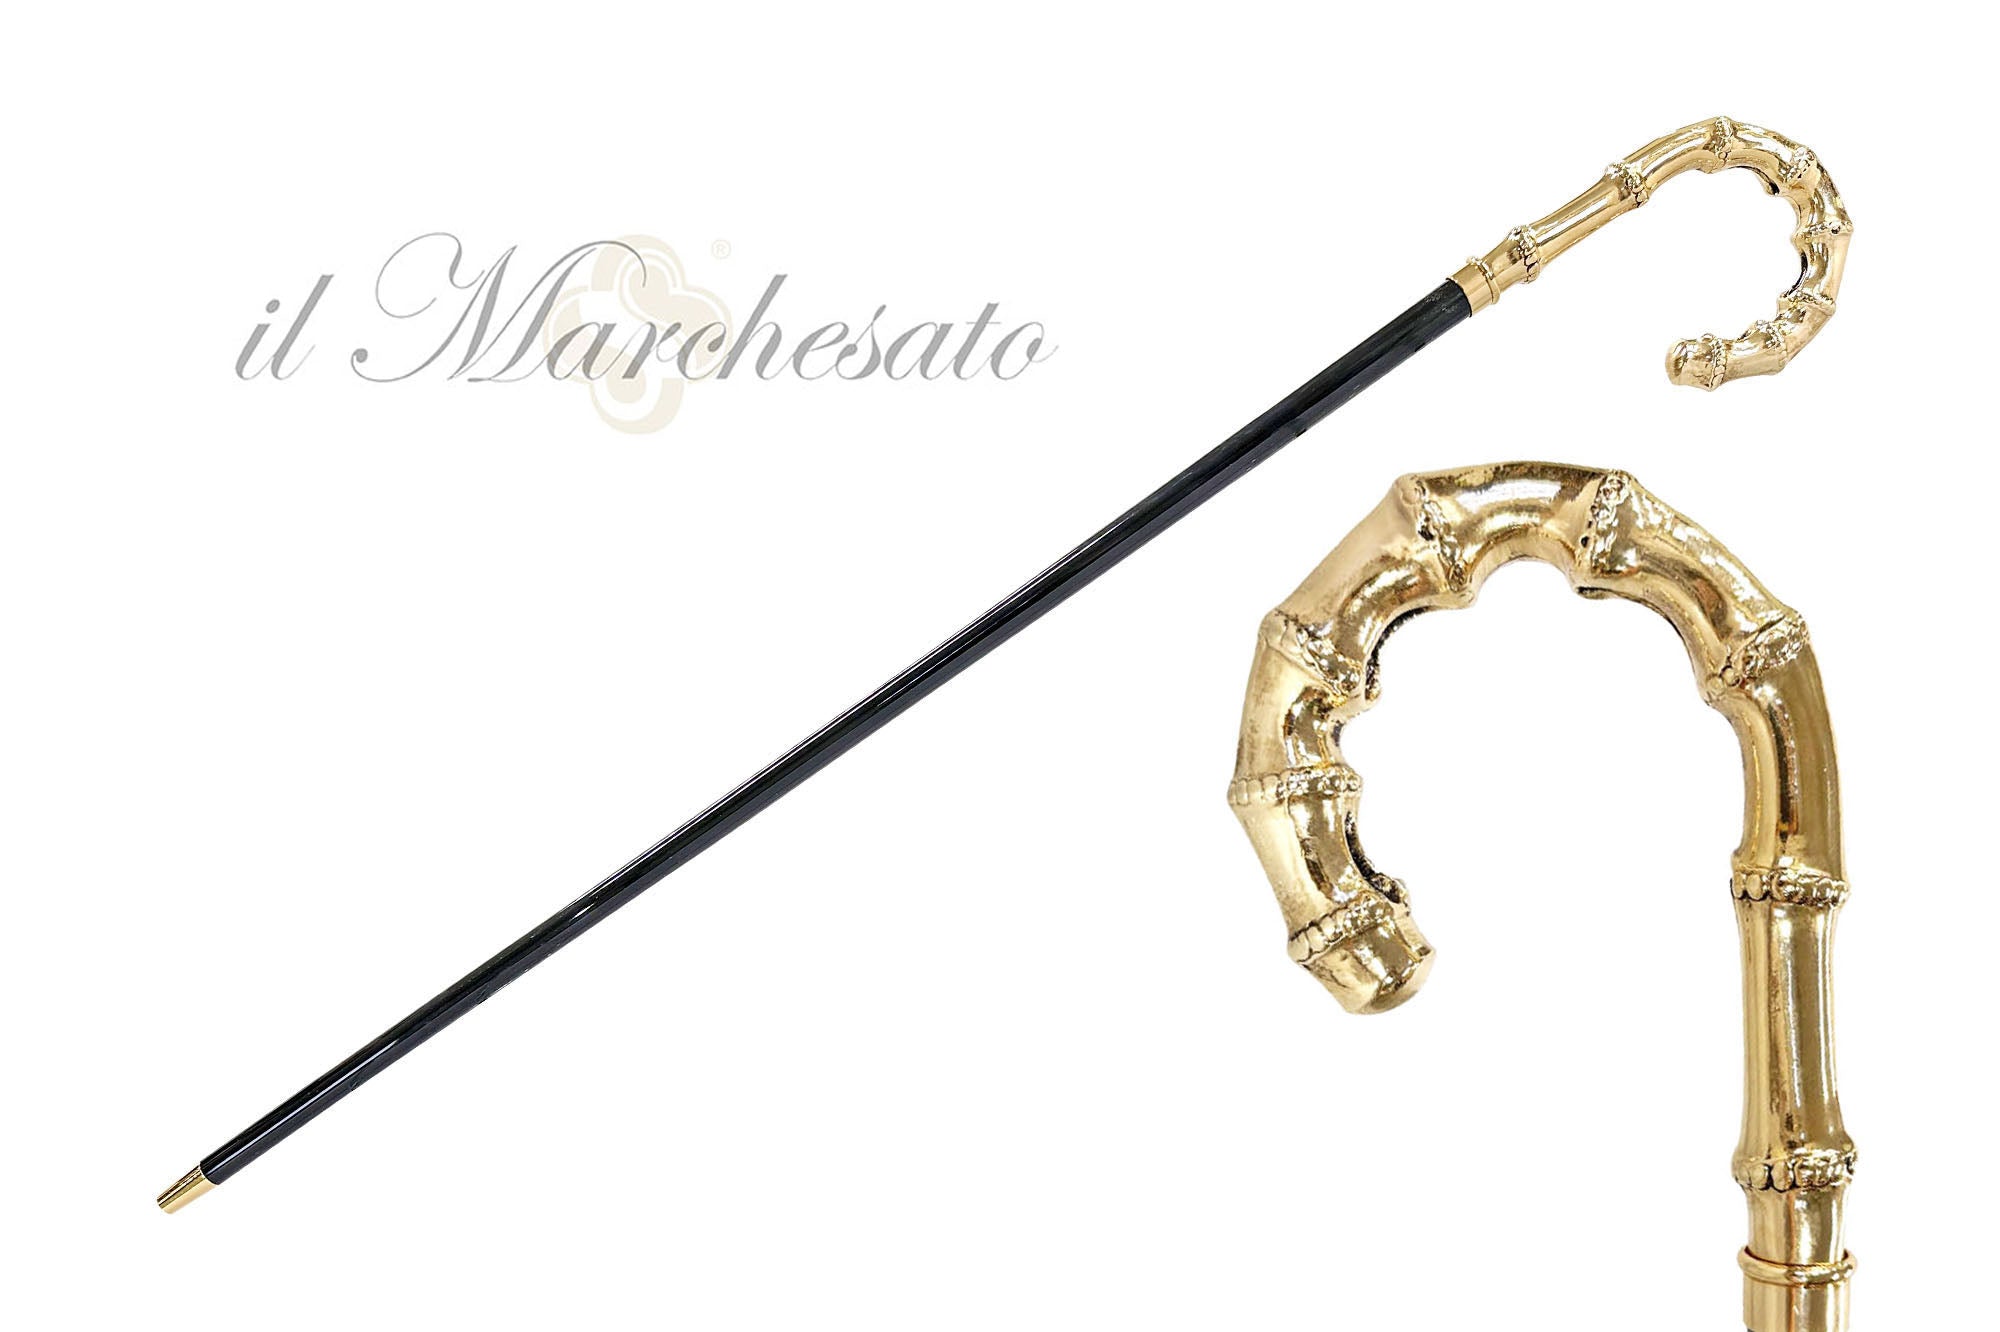 Bamboo-shaped walking stick - Goldplated 24K – ilMarchesato